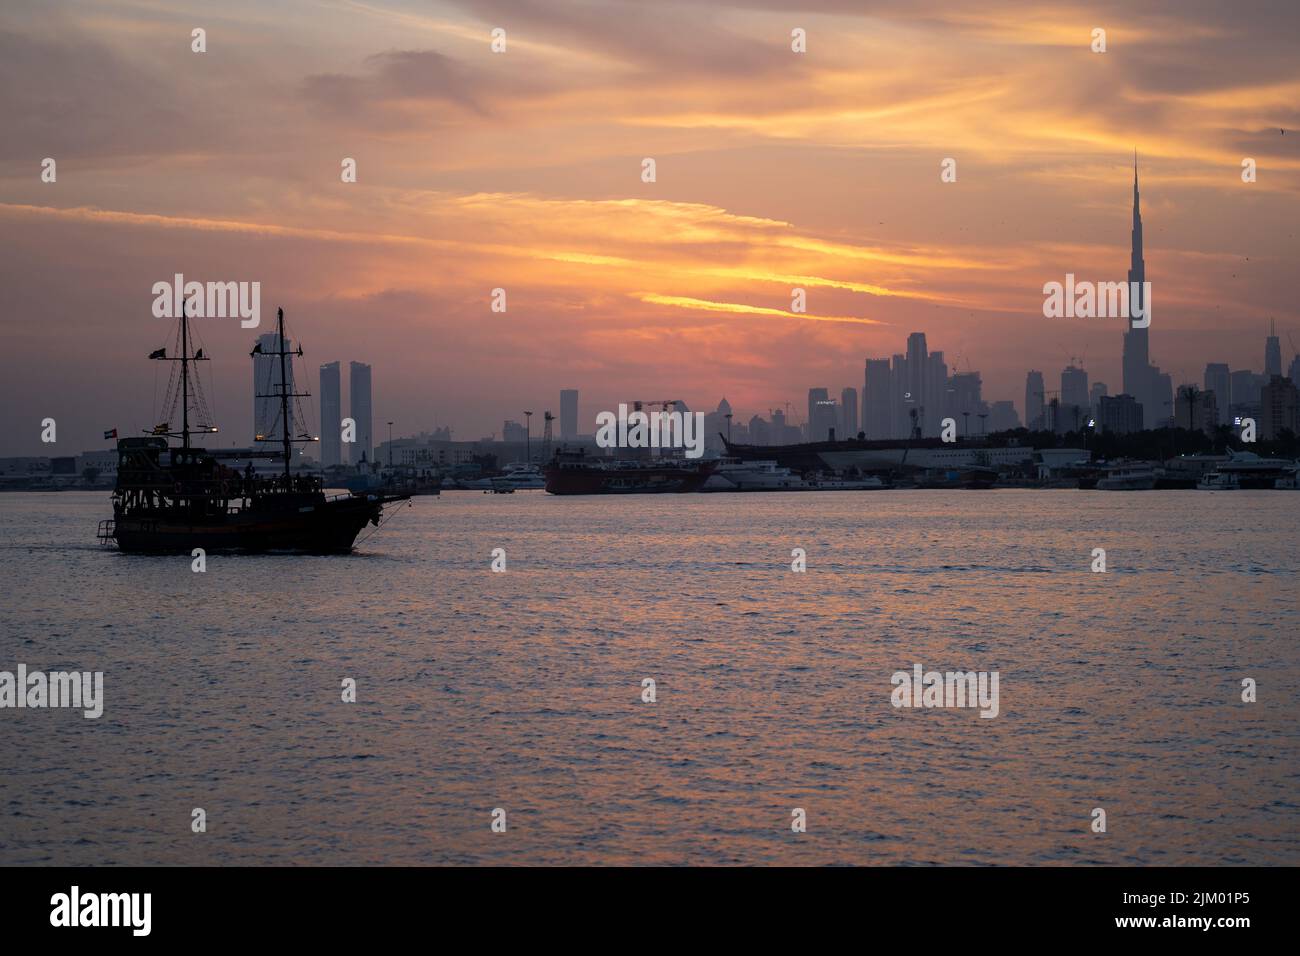 Una vista mozzafiato di una nave nel Lago di Festival City con il paesaggio urbano di Dubai sullo sfondo del cielo tramonto Foto Stock